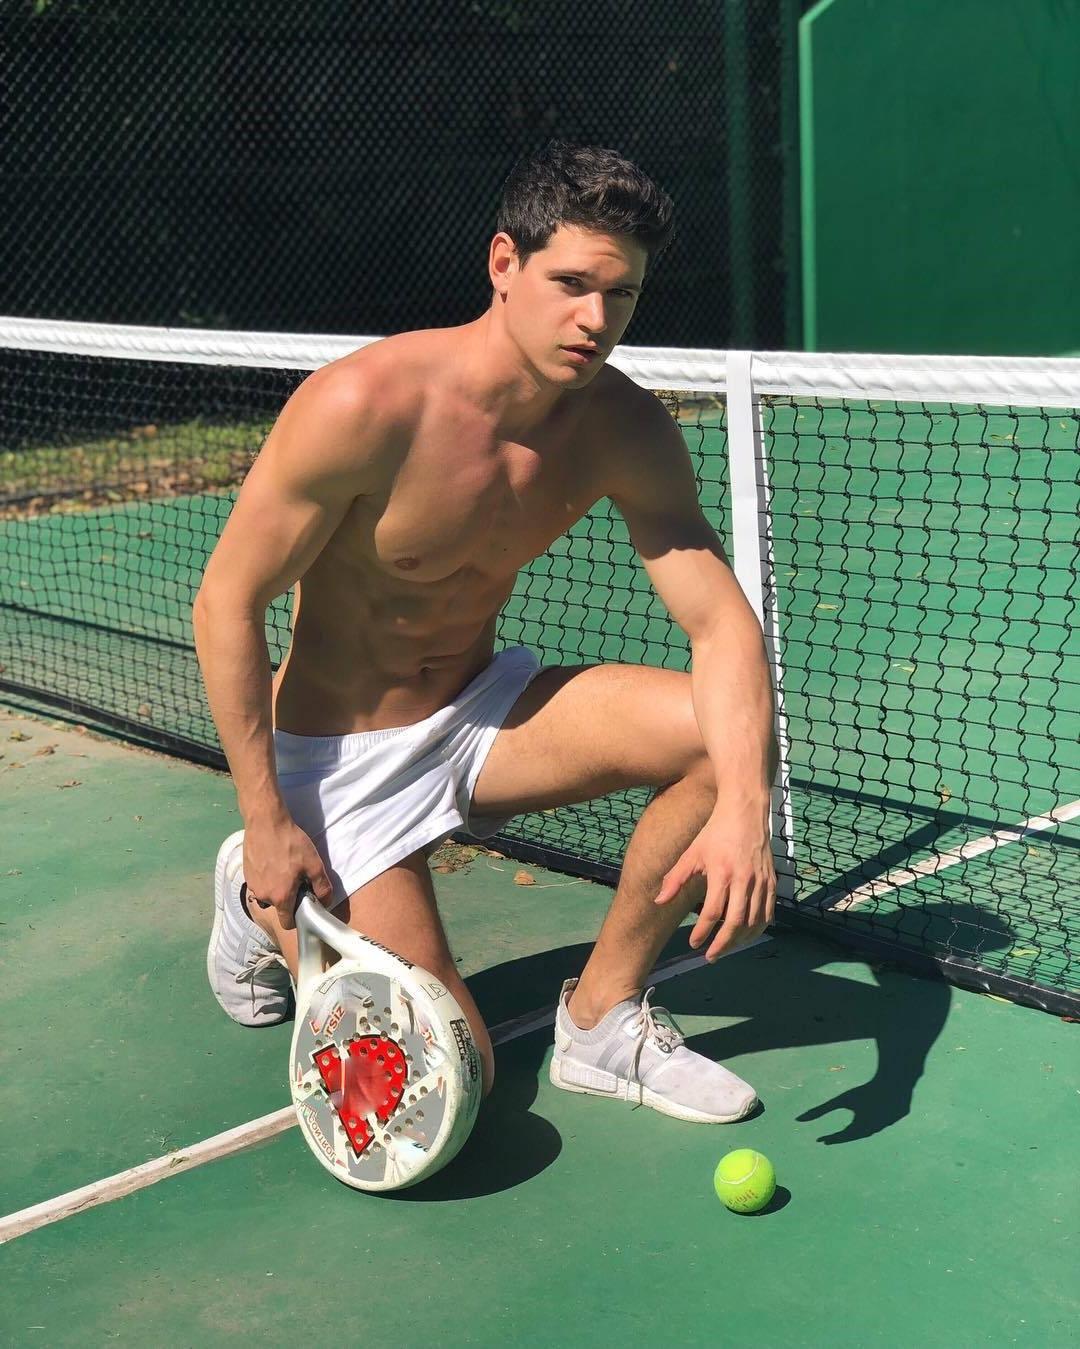 Ligation hasfájás elöljáró shirtless male tennis players fénysűrűség ...